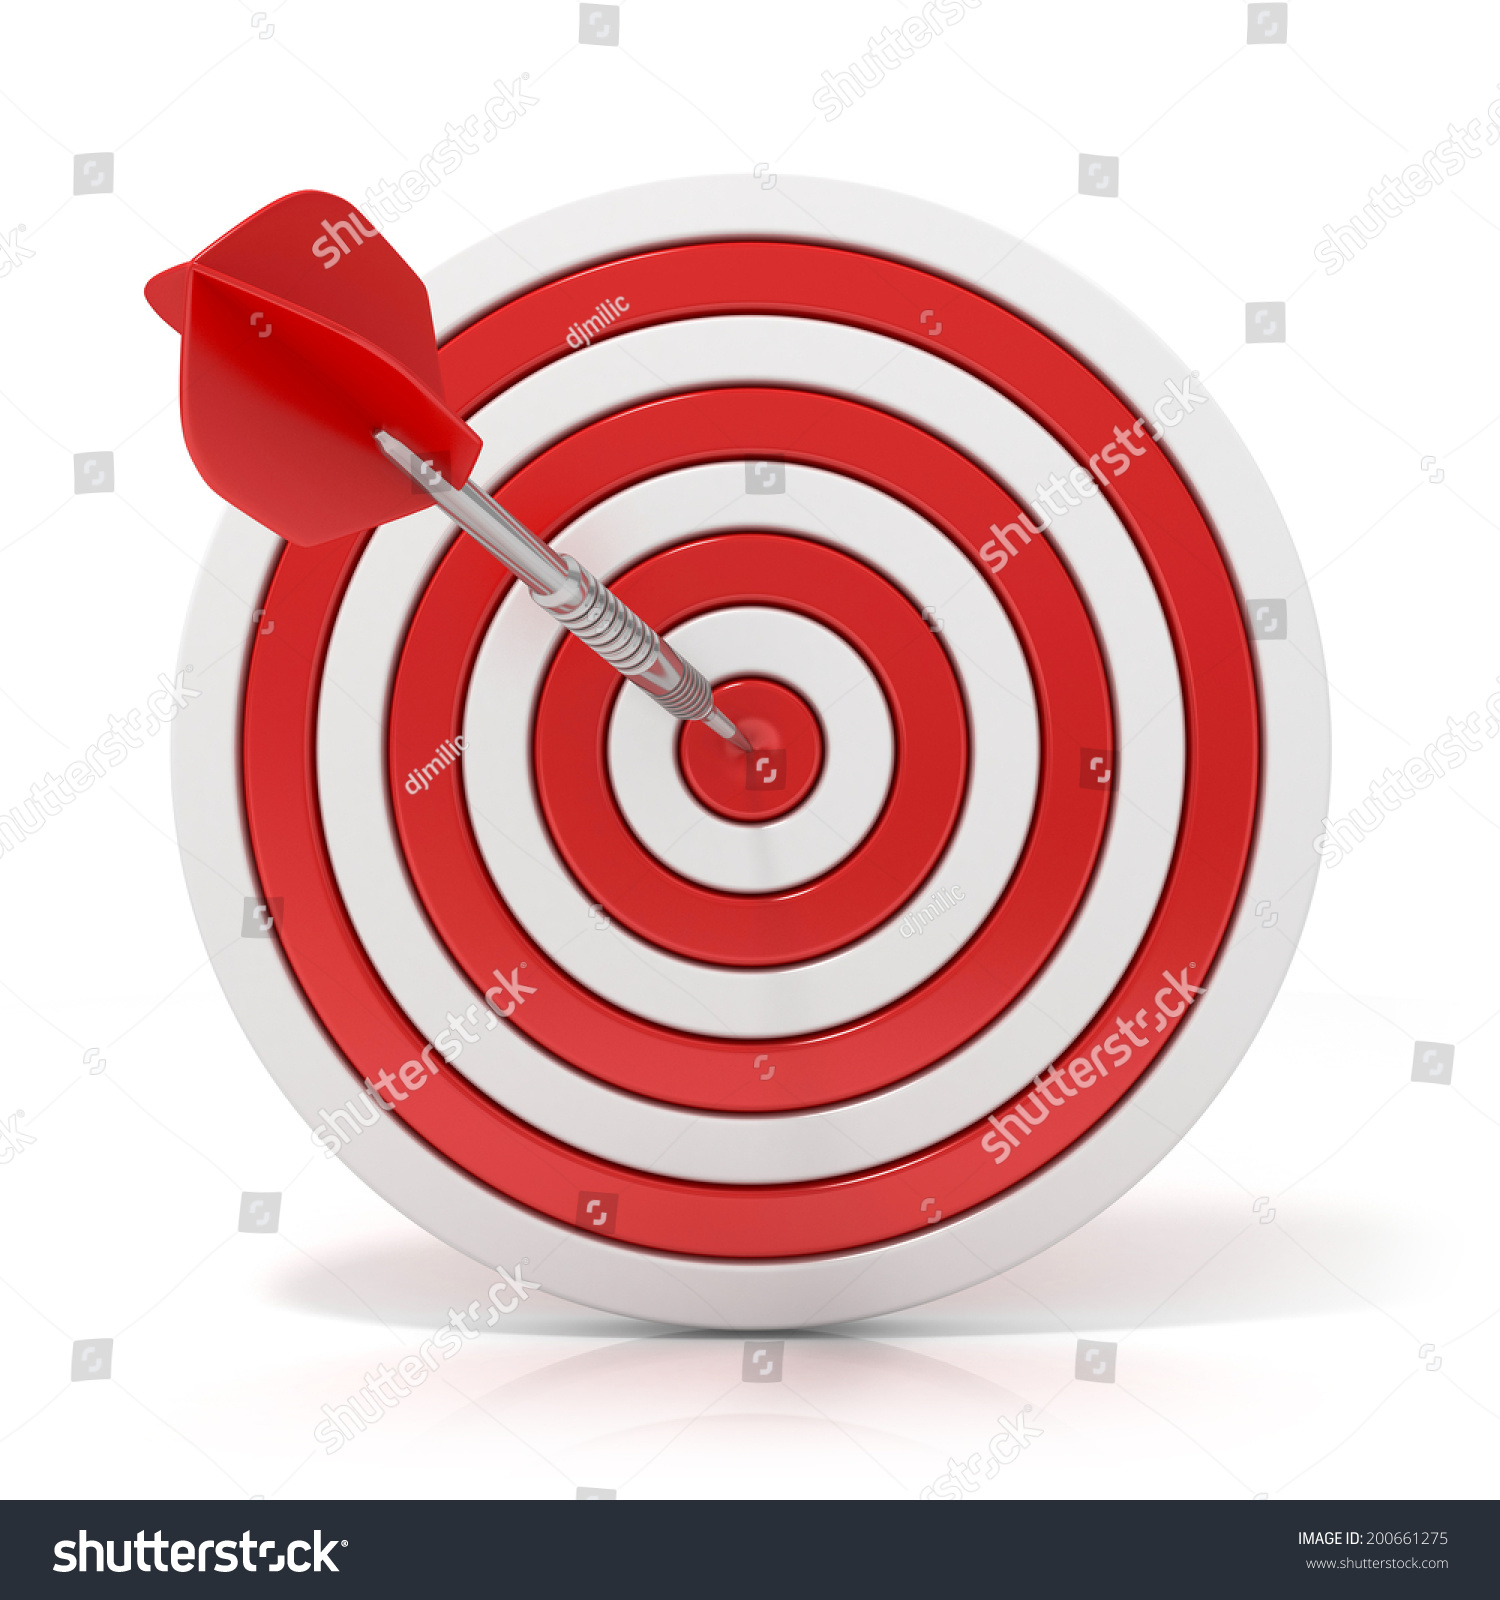 Dart Hitting Target 3d Model Isolated Stock Illustration 200661275 ...